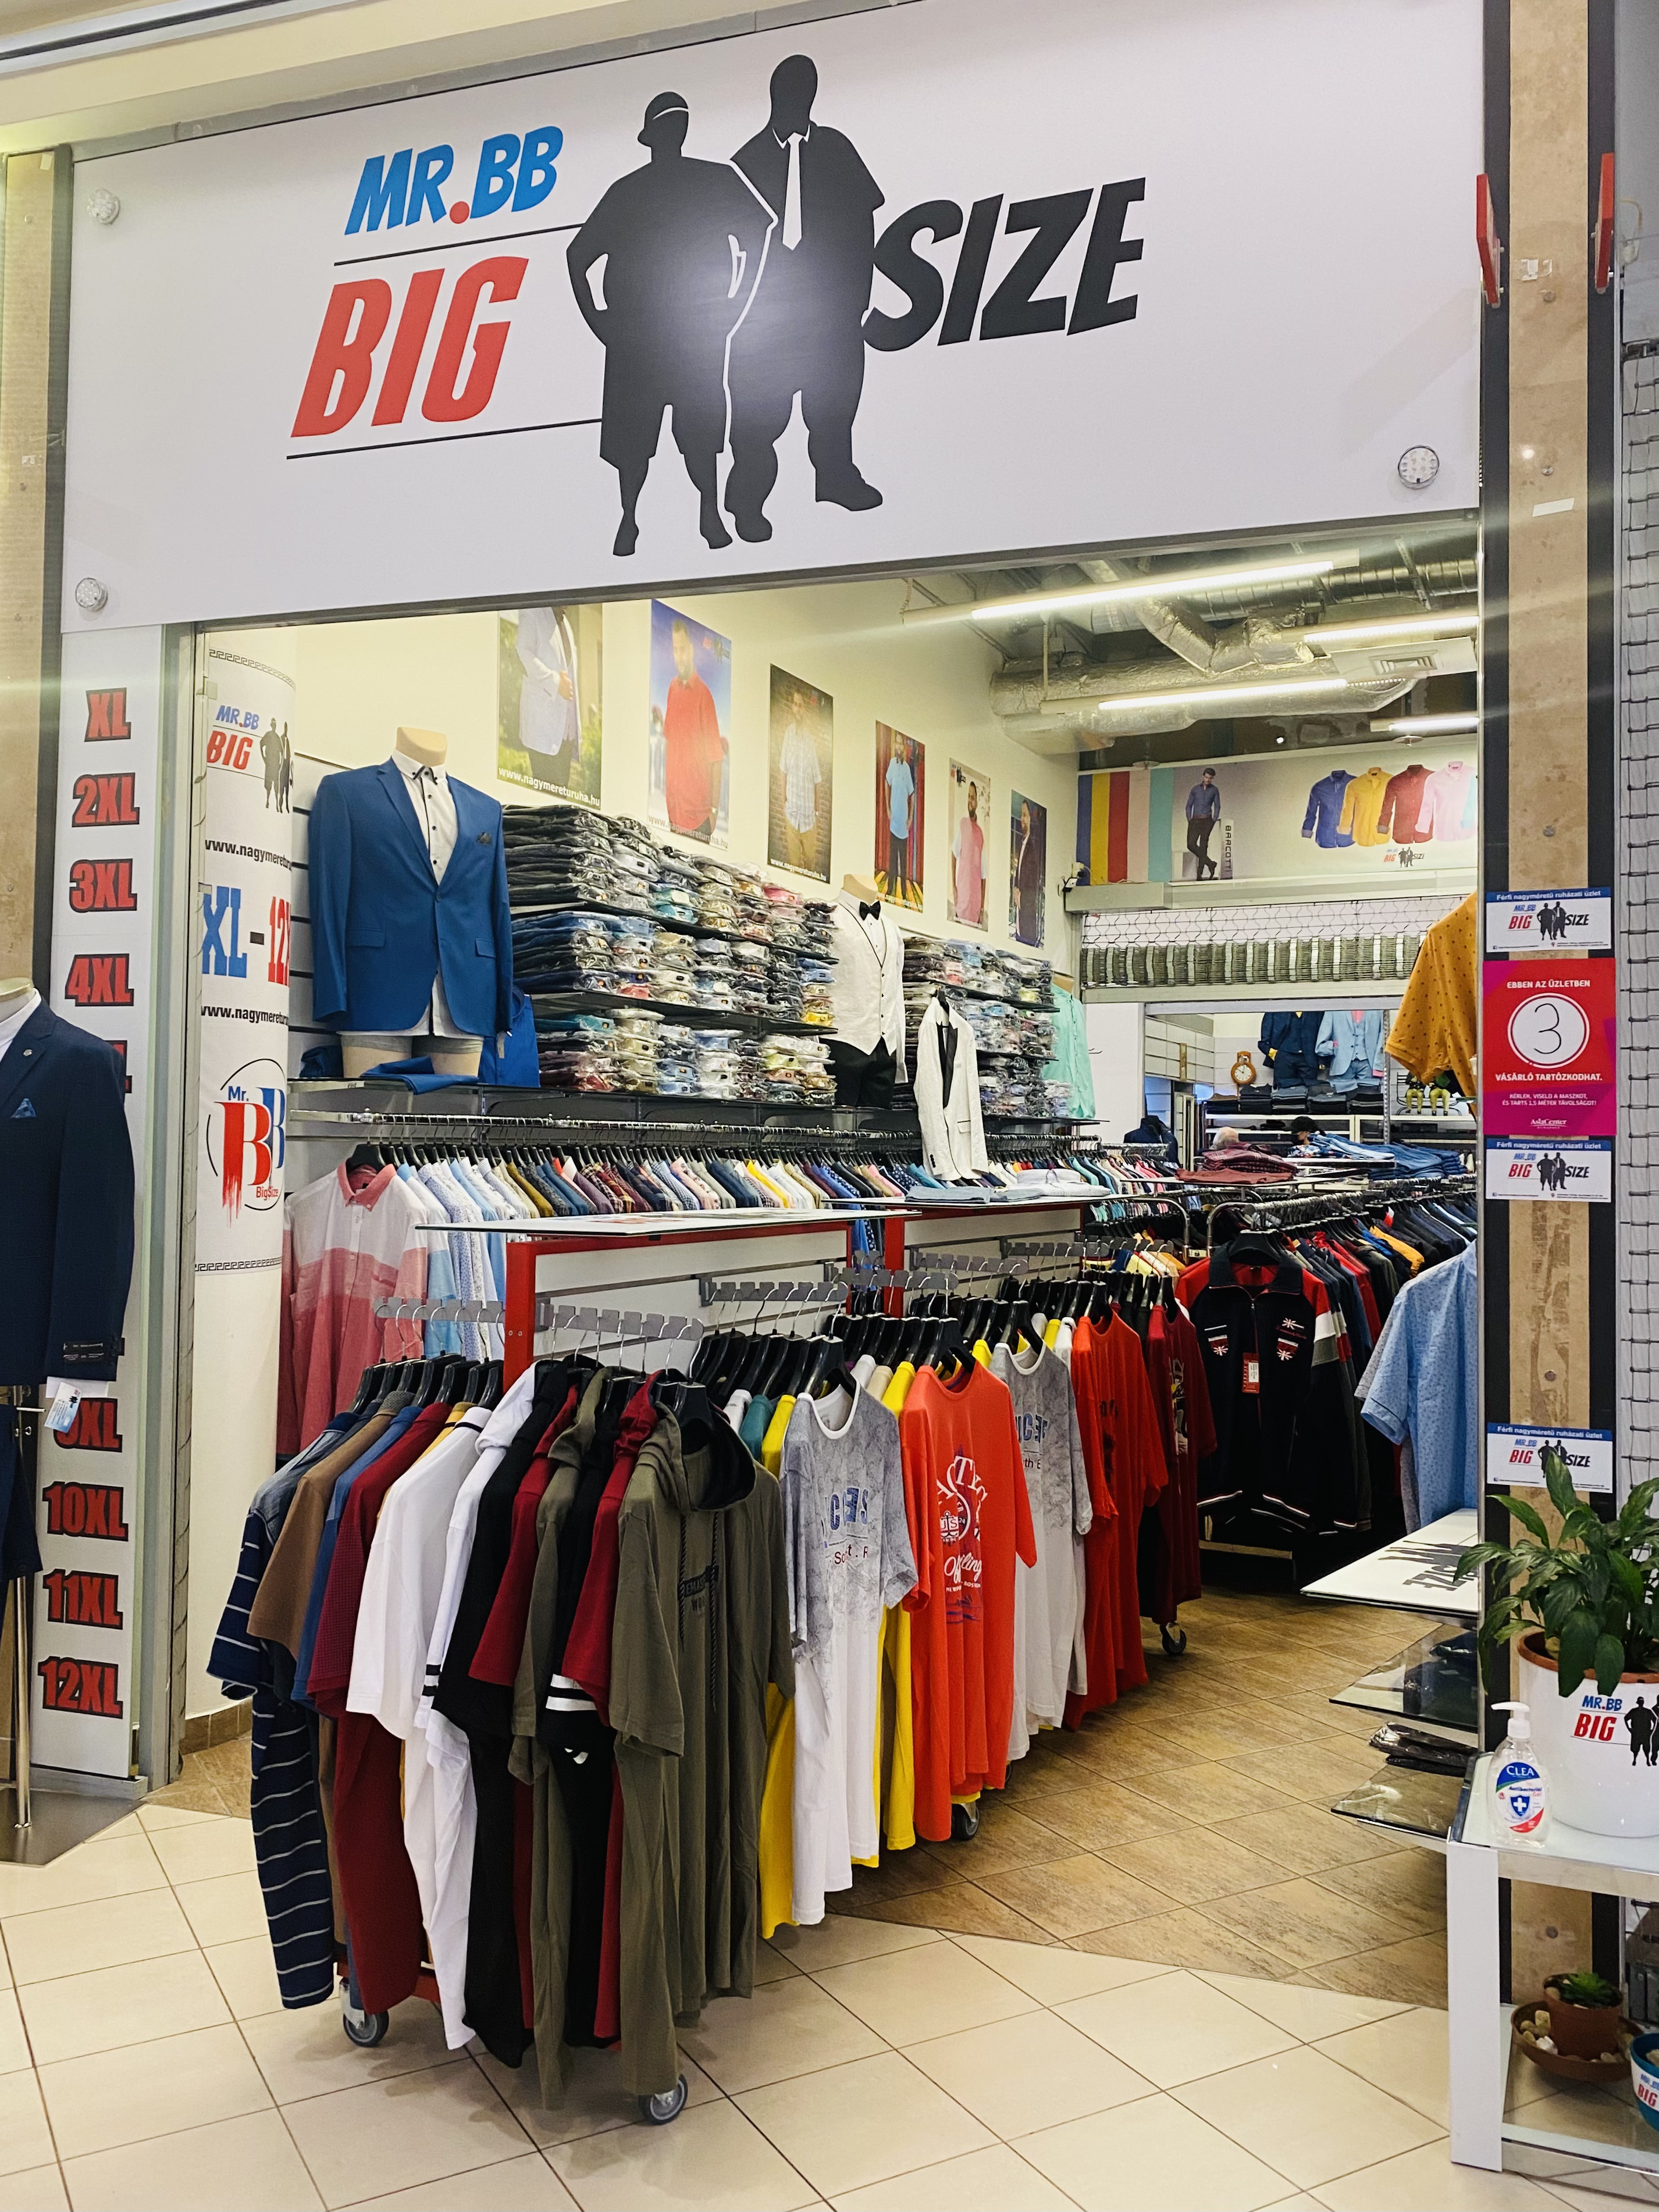 Mr.BB Big Size férfi nagyméretű ruházati bolt